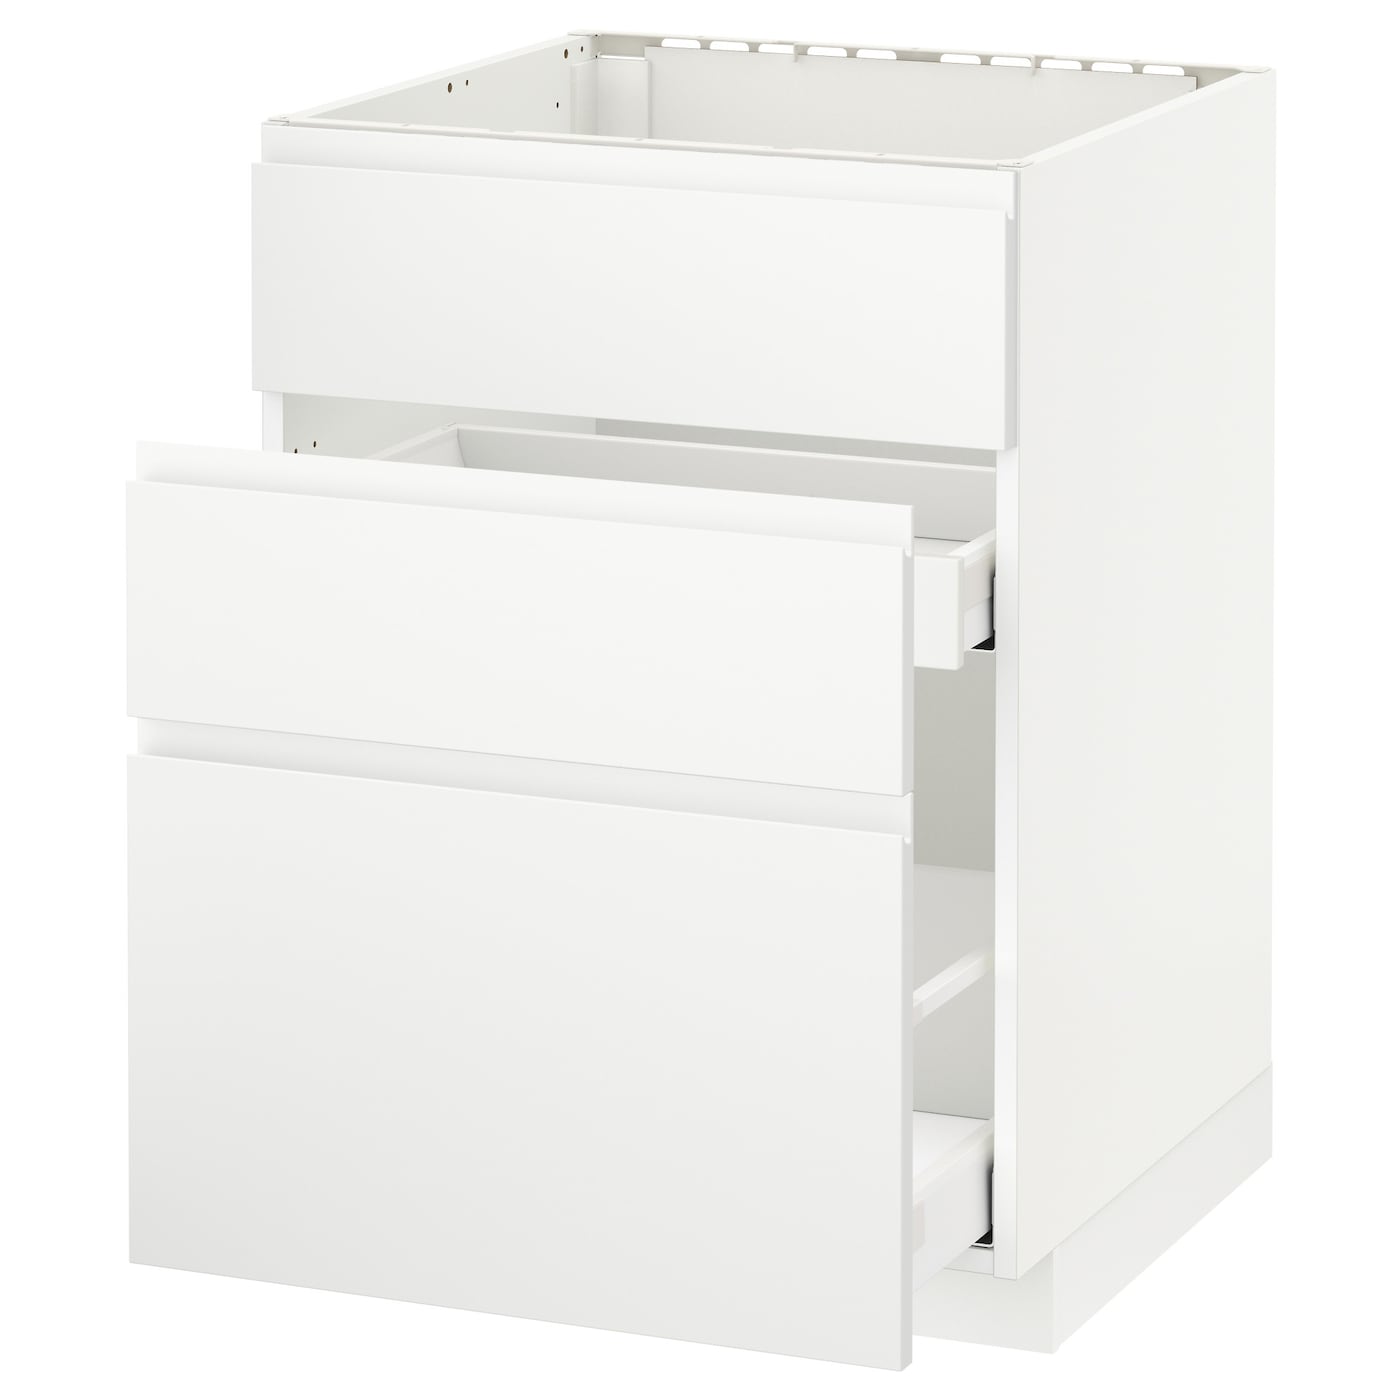 Напольный кухонный шкаф  - IKEA METOD MAXIMERA, 88x62x60см, белый, МЕТОД МАКСИМЕРА ИКЕА